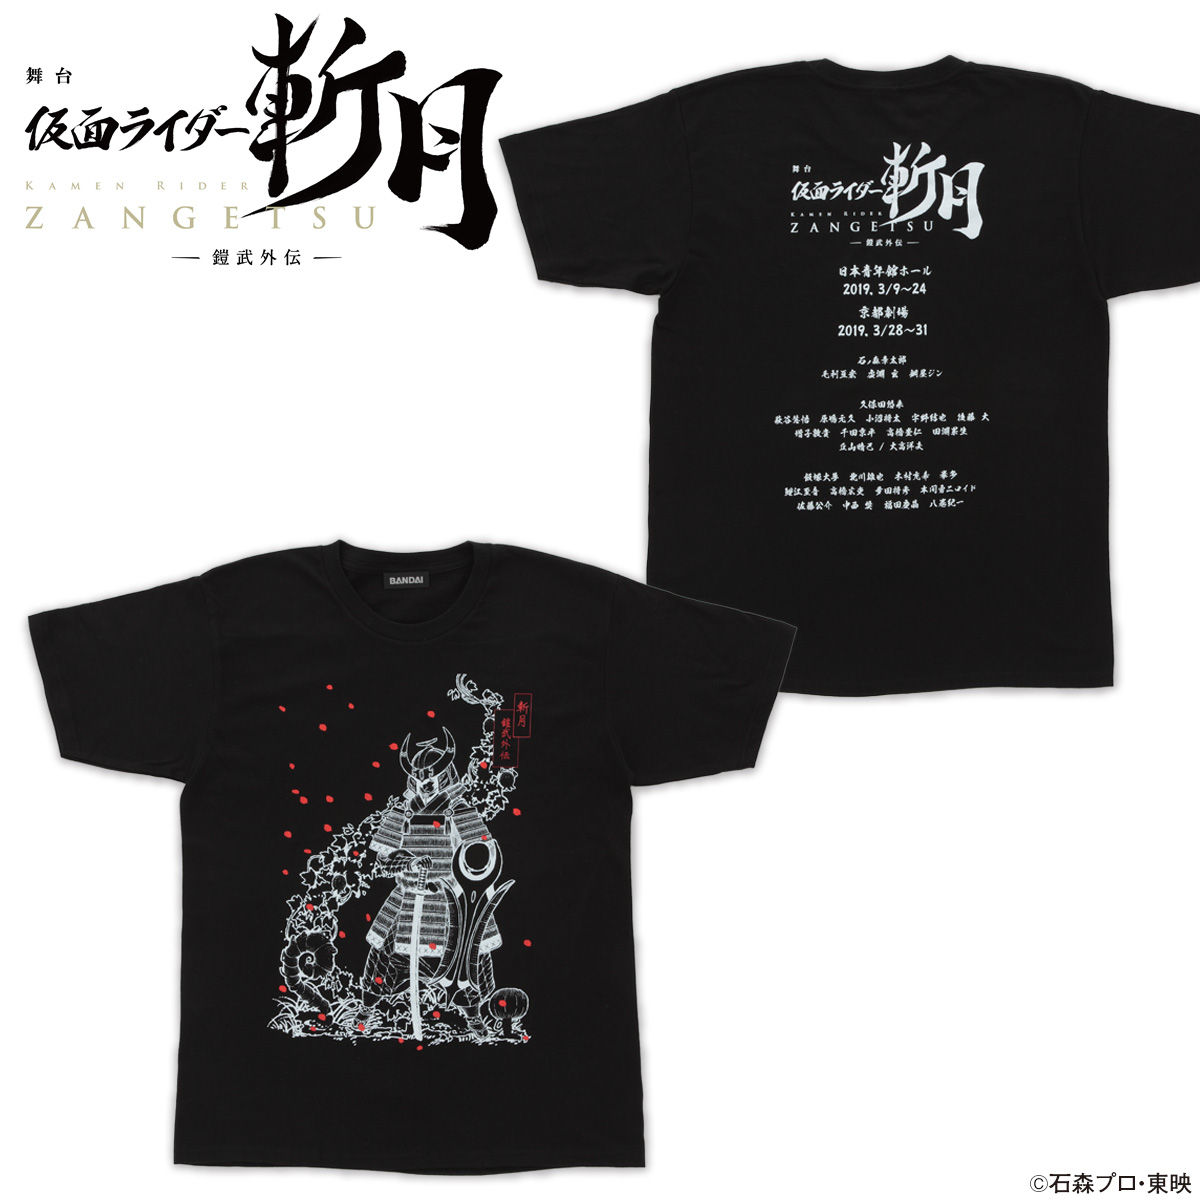 Stage show "KAMEN RIDER ZANGETSU" -Gaim Gaiden- T-shirt 